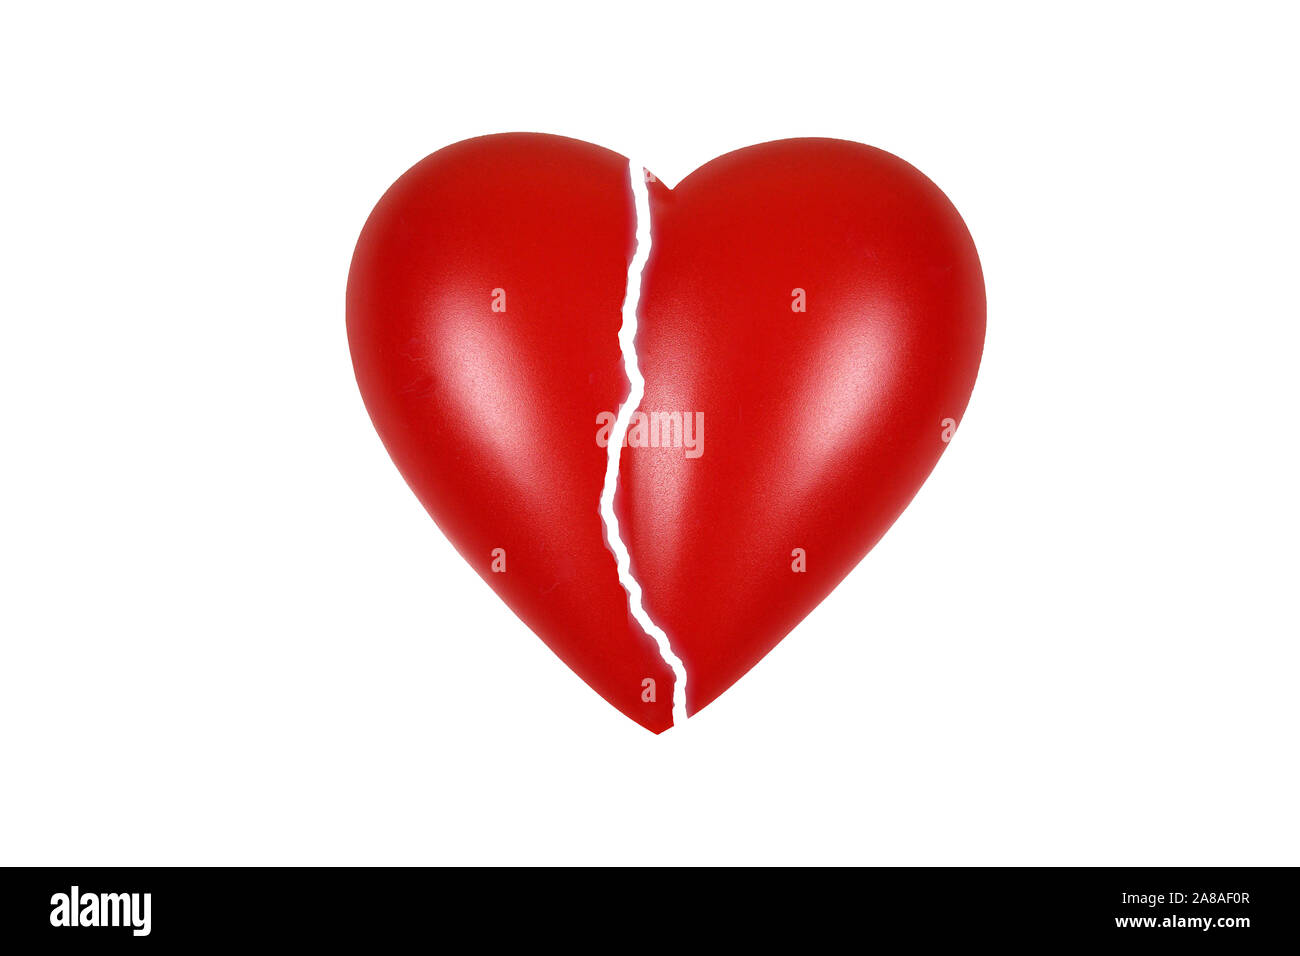 Rotes Herz, organo, Gesundheit, Körperteil, Gebrochenes Herz, Schmerz, Liebeskummer, Trauer, Geflicktes Herz, Pflaster, Reparatur, Repariertes Herz, Foto Stock